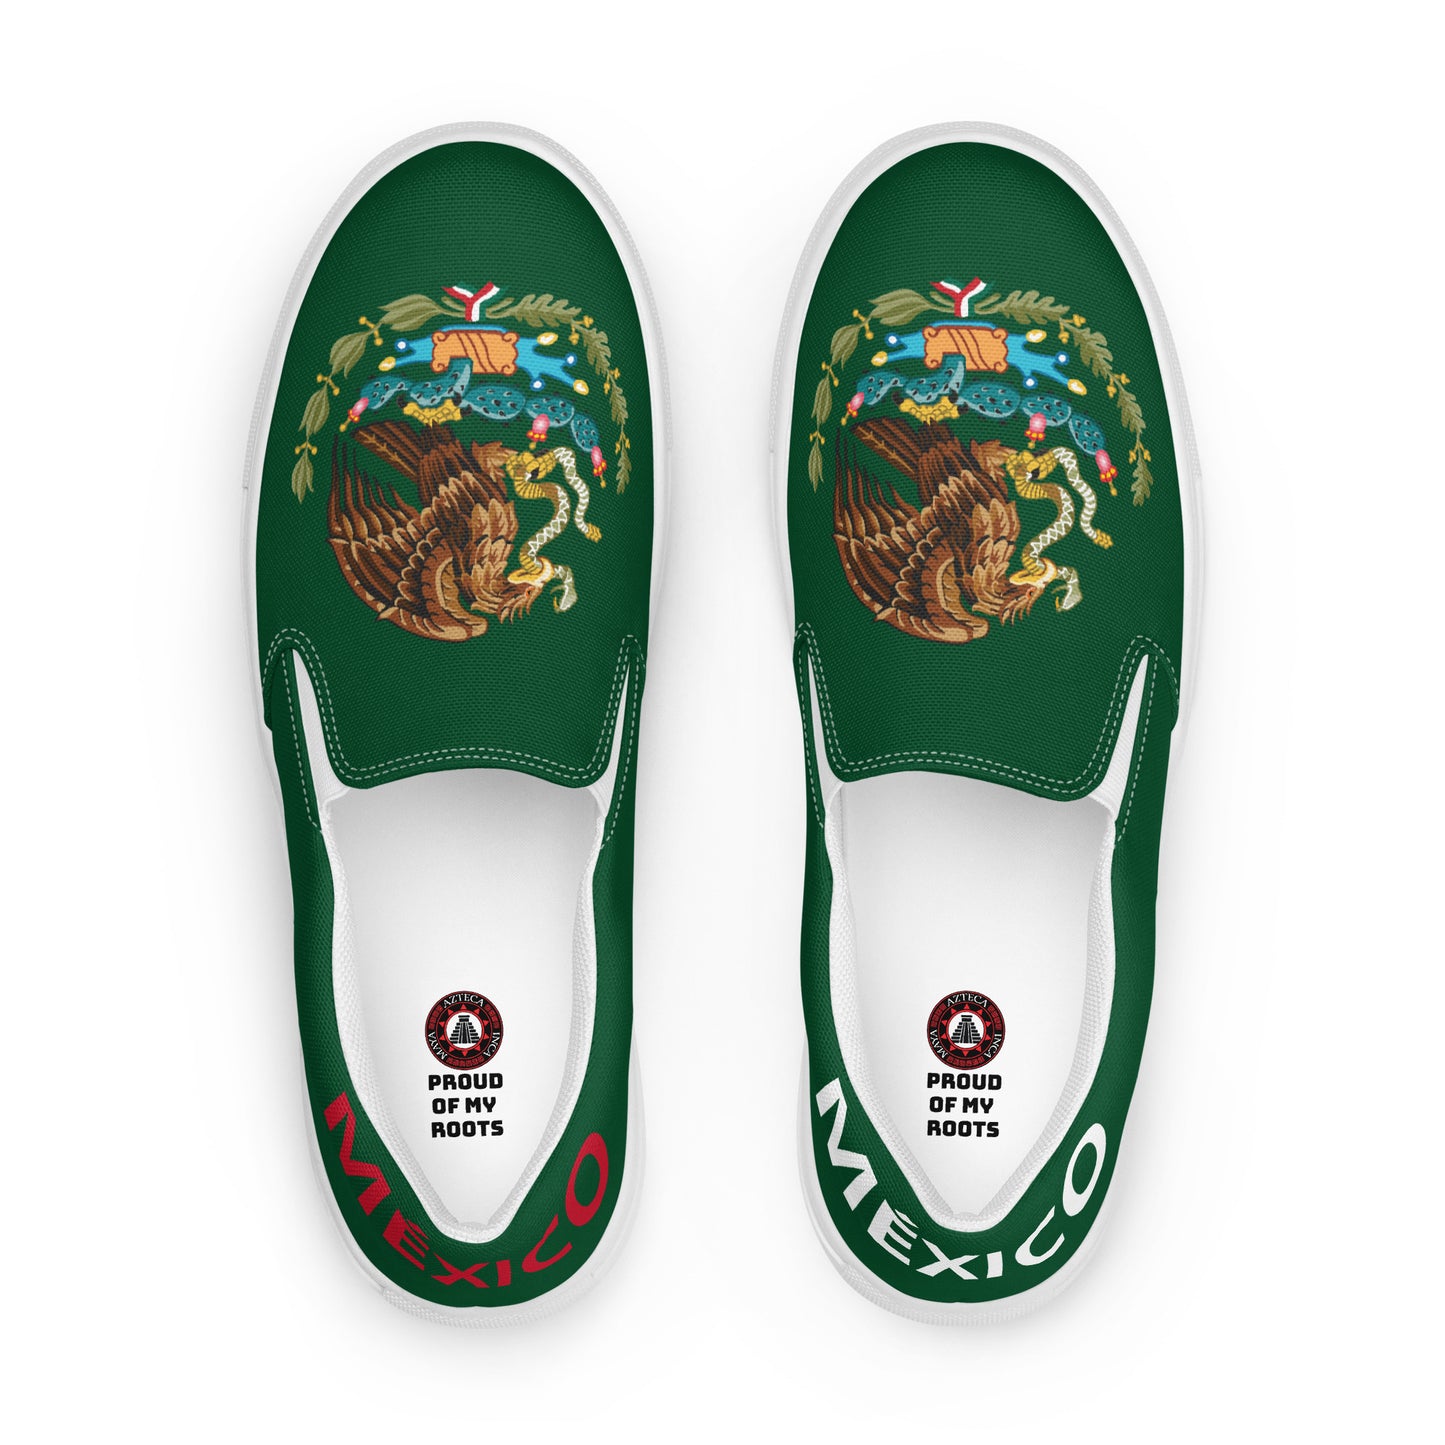 México - Men - Green - Slip-on shoes